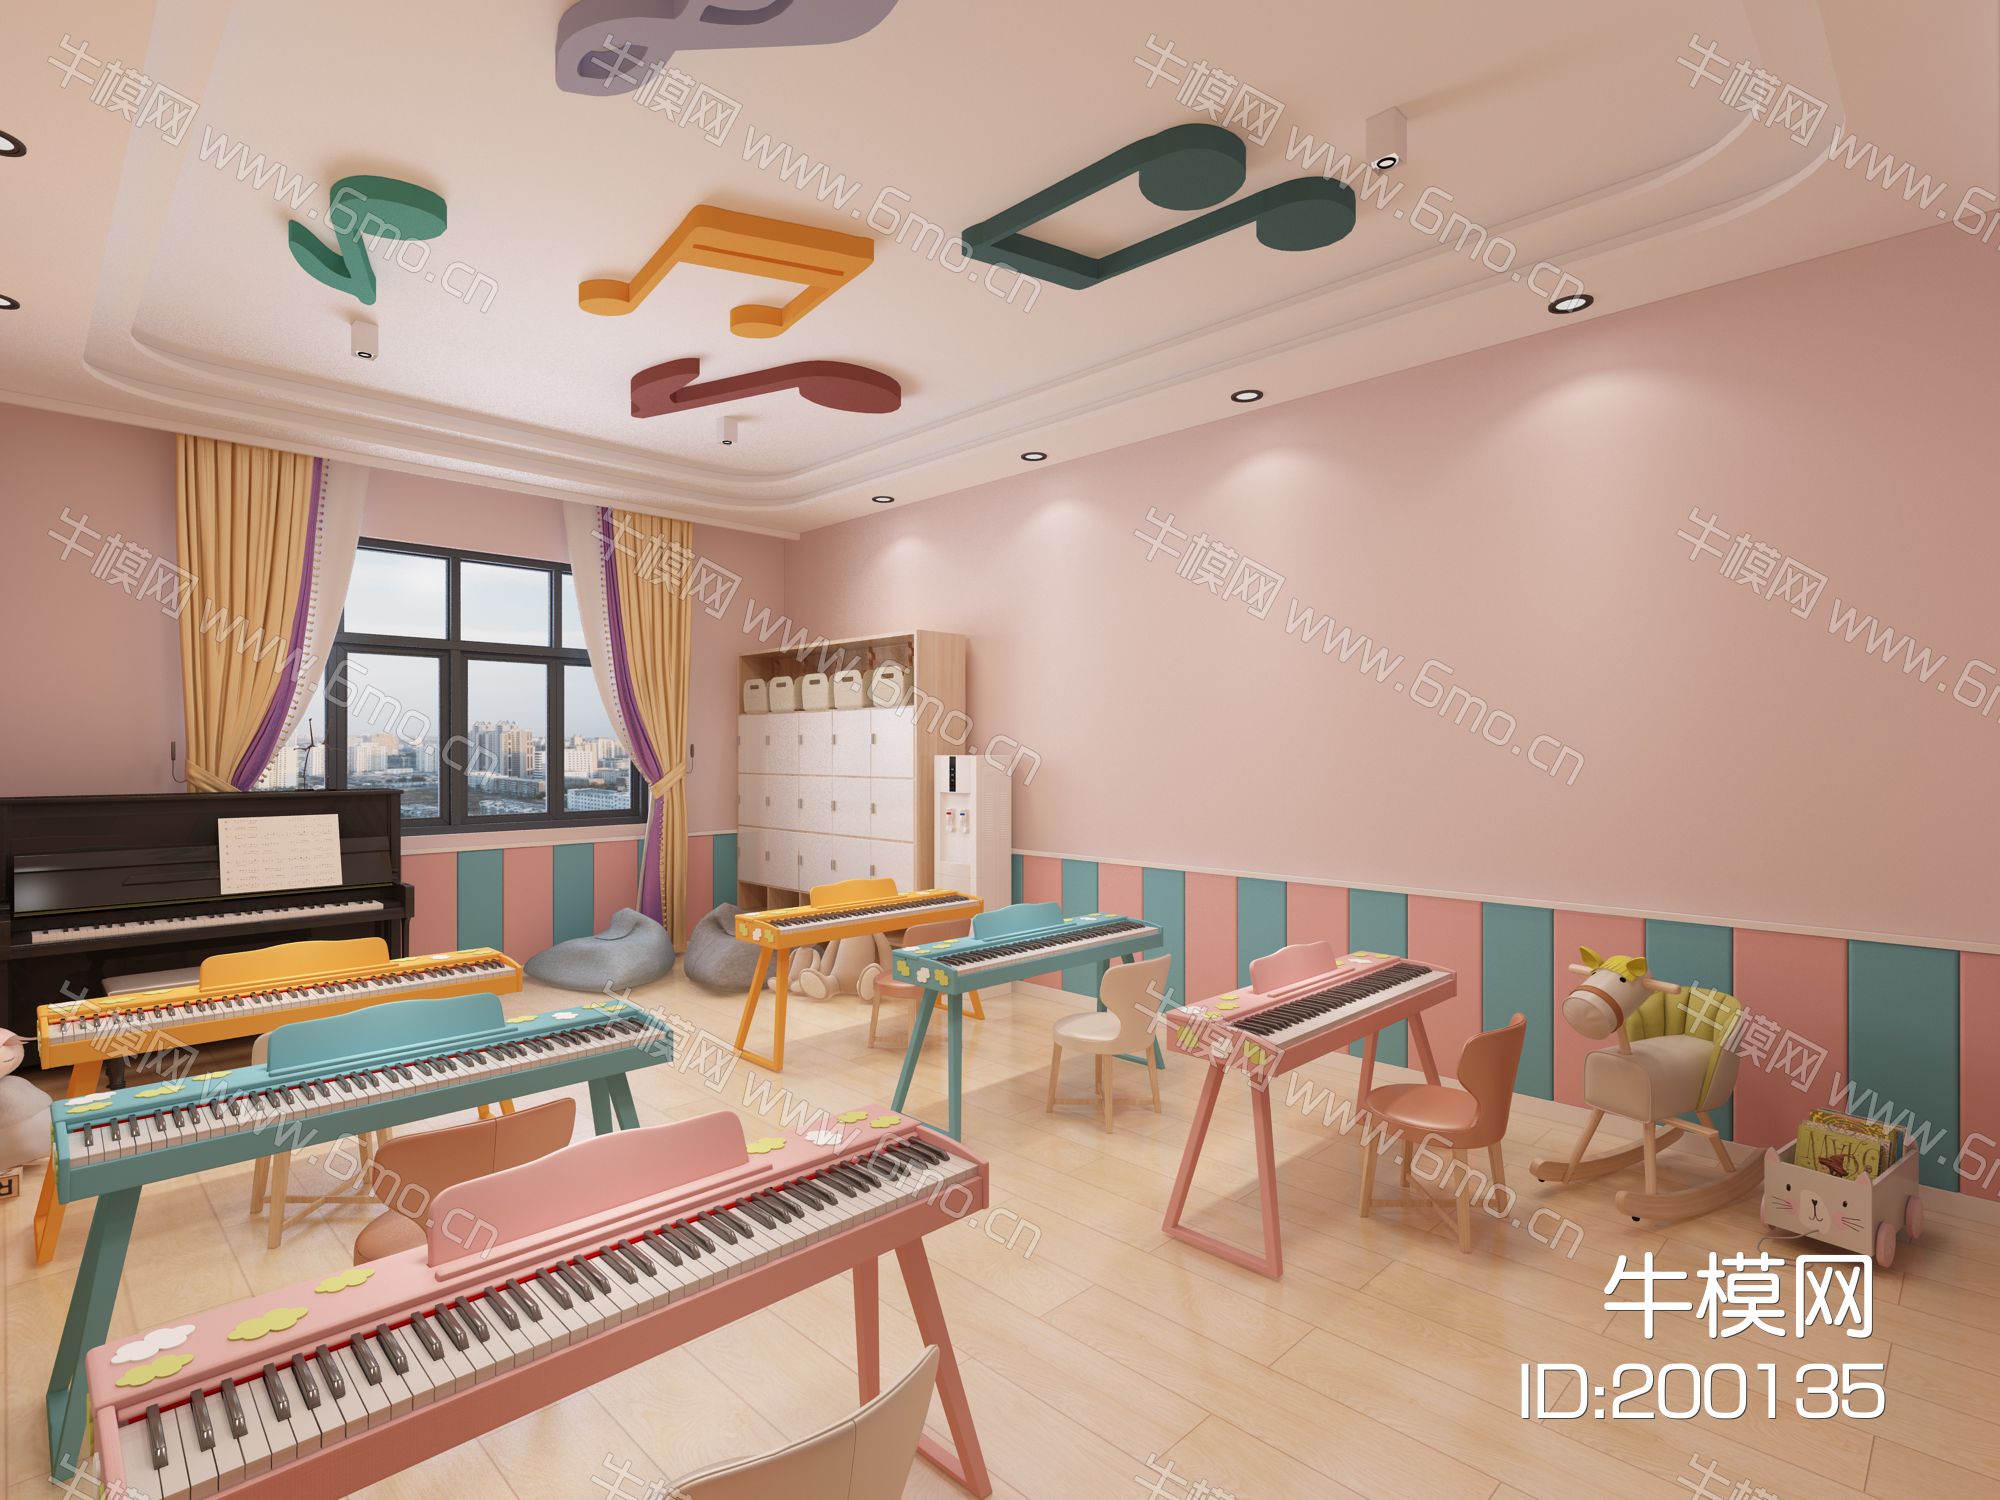 现代幼儿园钢琴教室